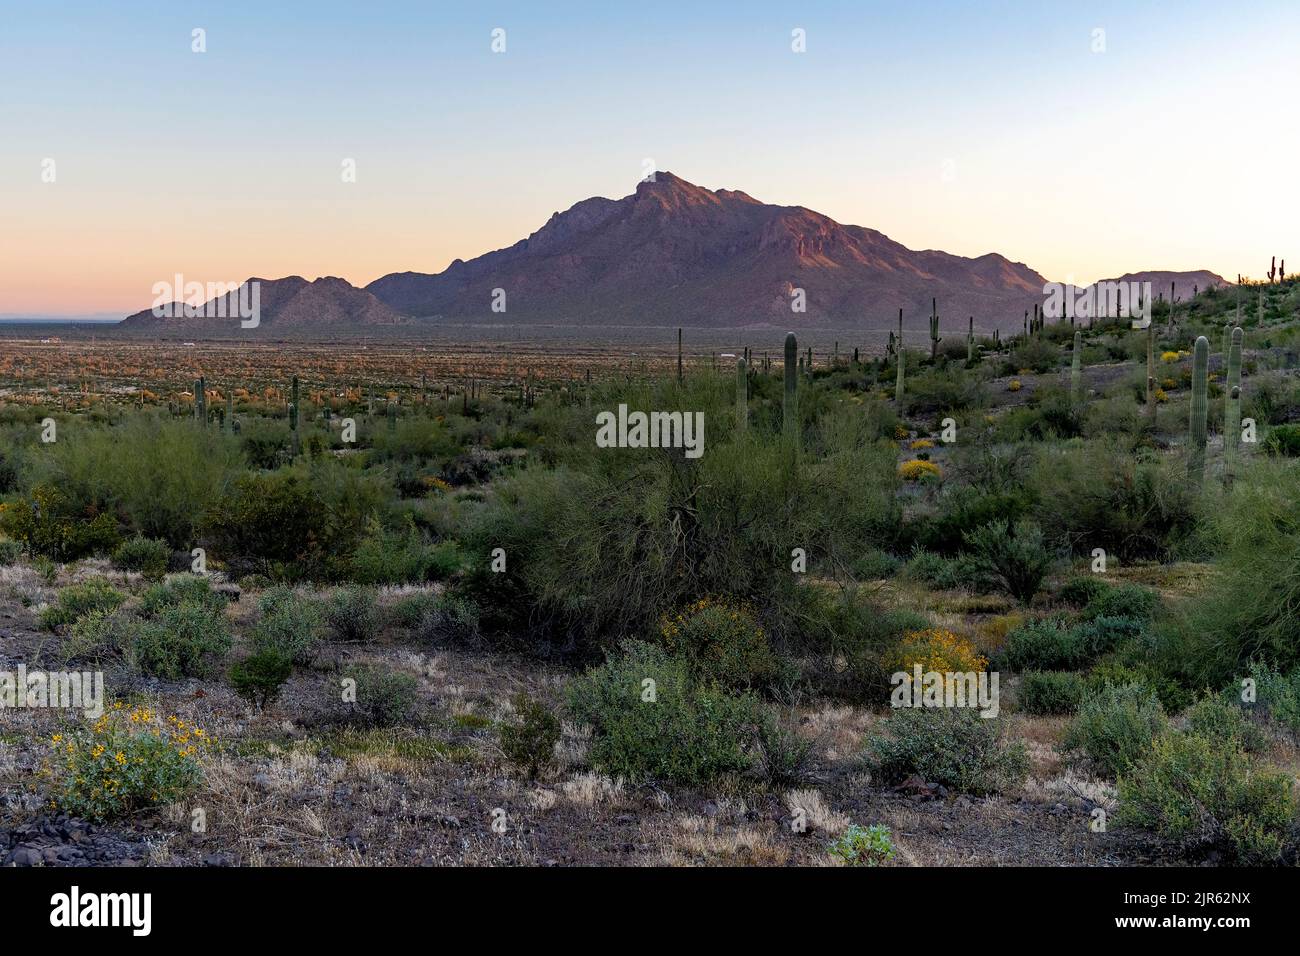 Scena mattutina dal Picacho Peak state Park con cactus e altri arbusti del deserto. Sullo sfondo c'è Newman Peak. Marzo 2020. Foto Stock